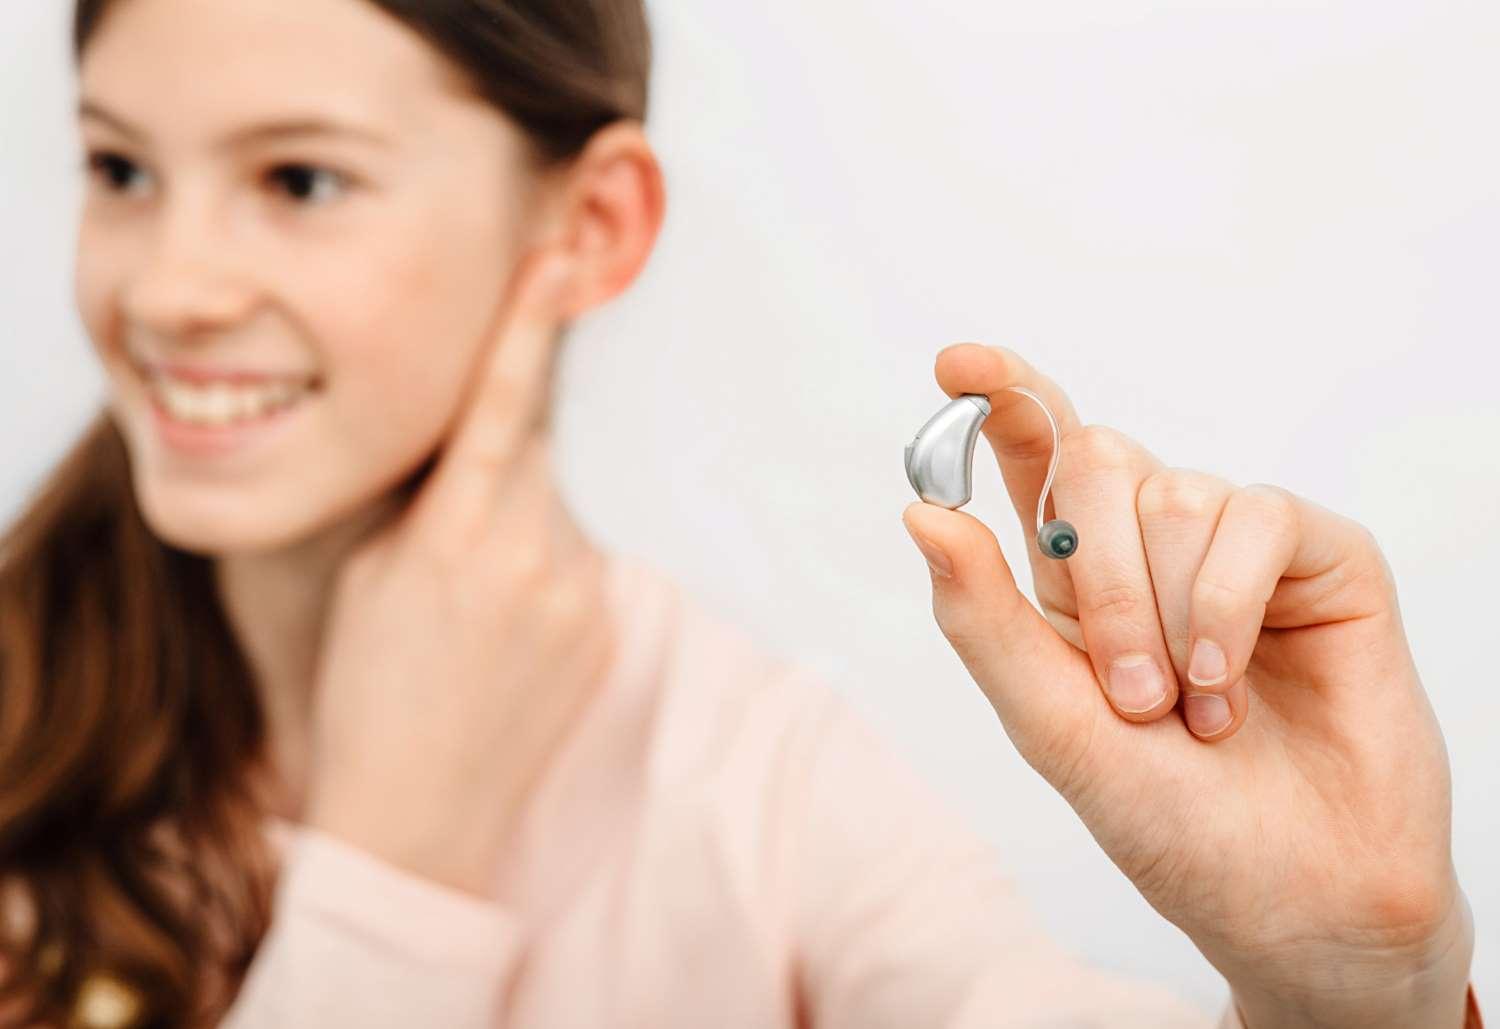 Hörgeräte: Junge Frau hält ein Hörgerät in ihrer Hand und fasst sich mit der anderen Hand ans Ohr.